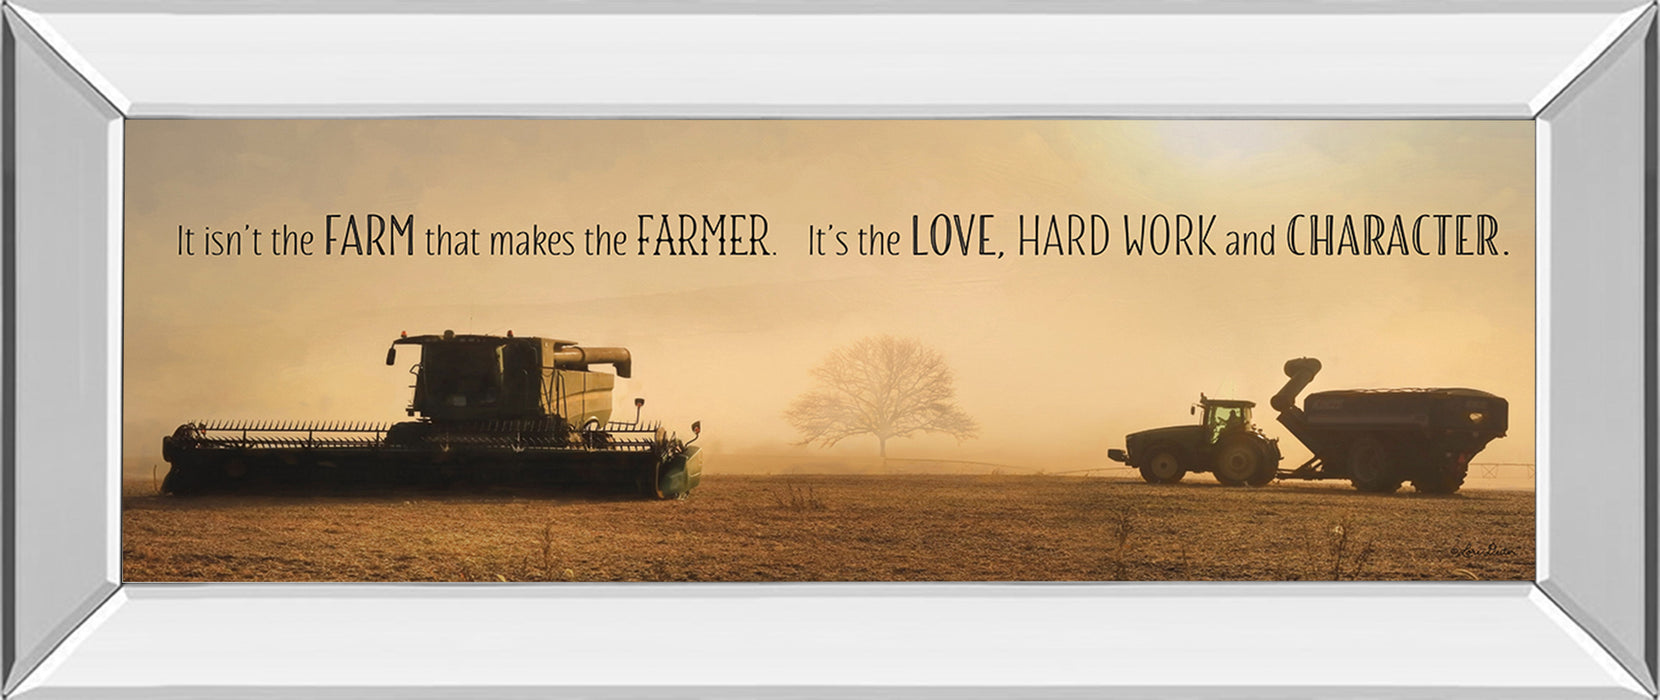 The Farmer By Lori Dieter - Mirror Framed Photo Print Wall Art - Dark Brown